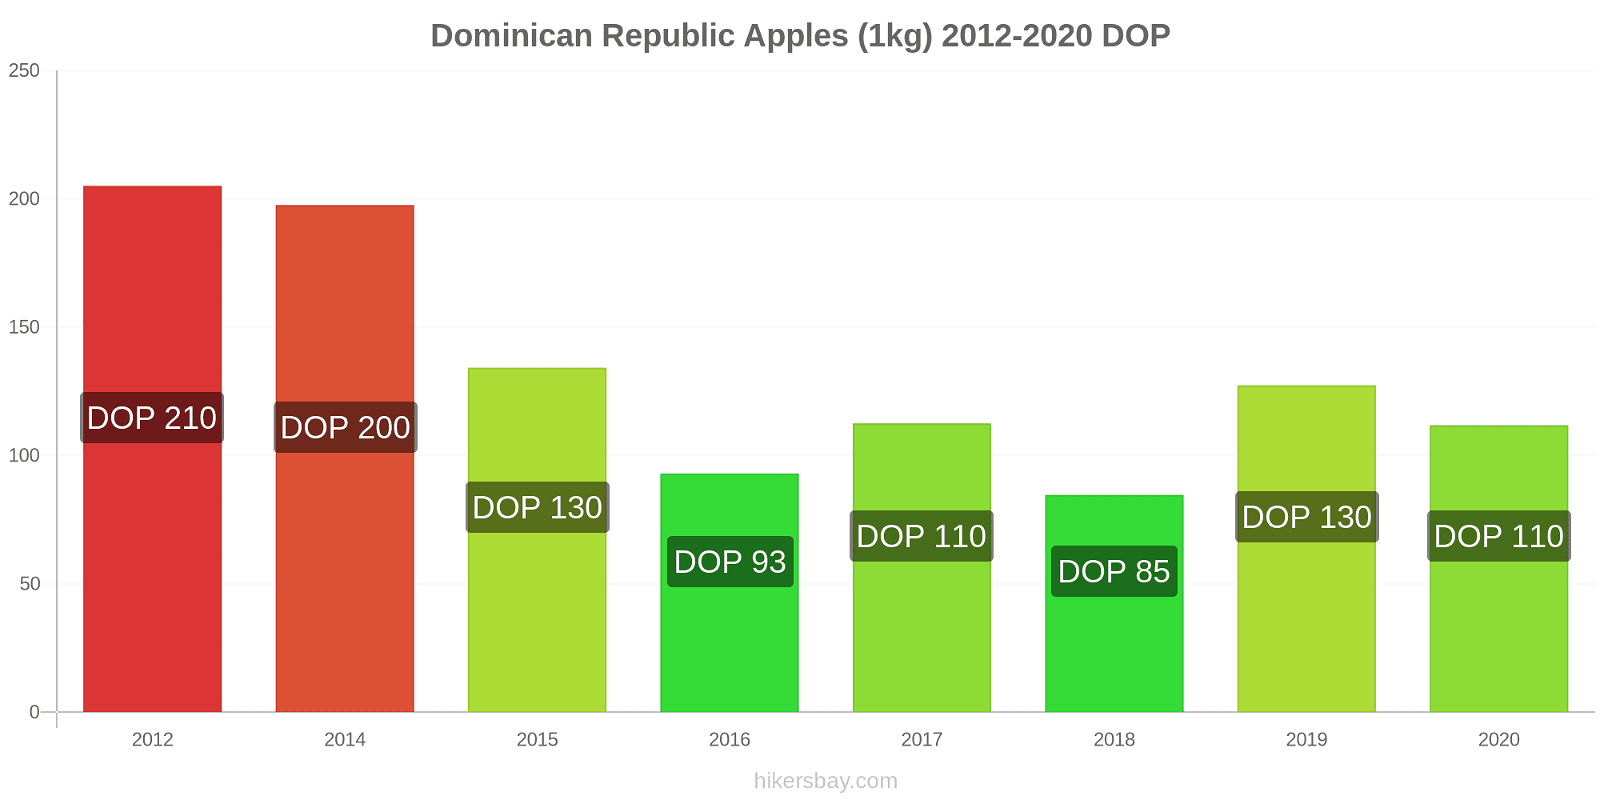 cost of a big mac inthe dominican republic